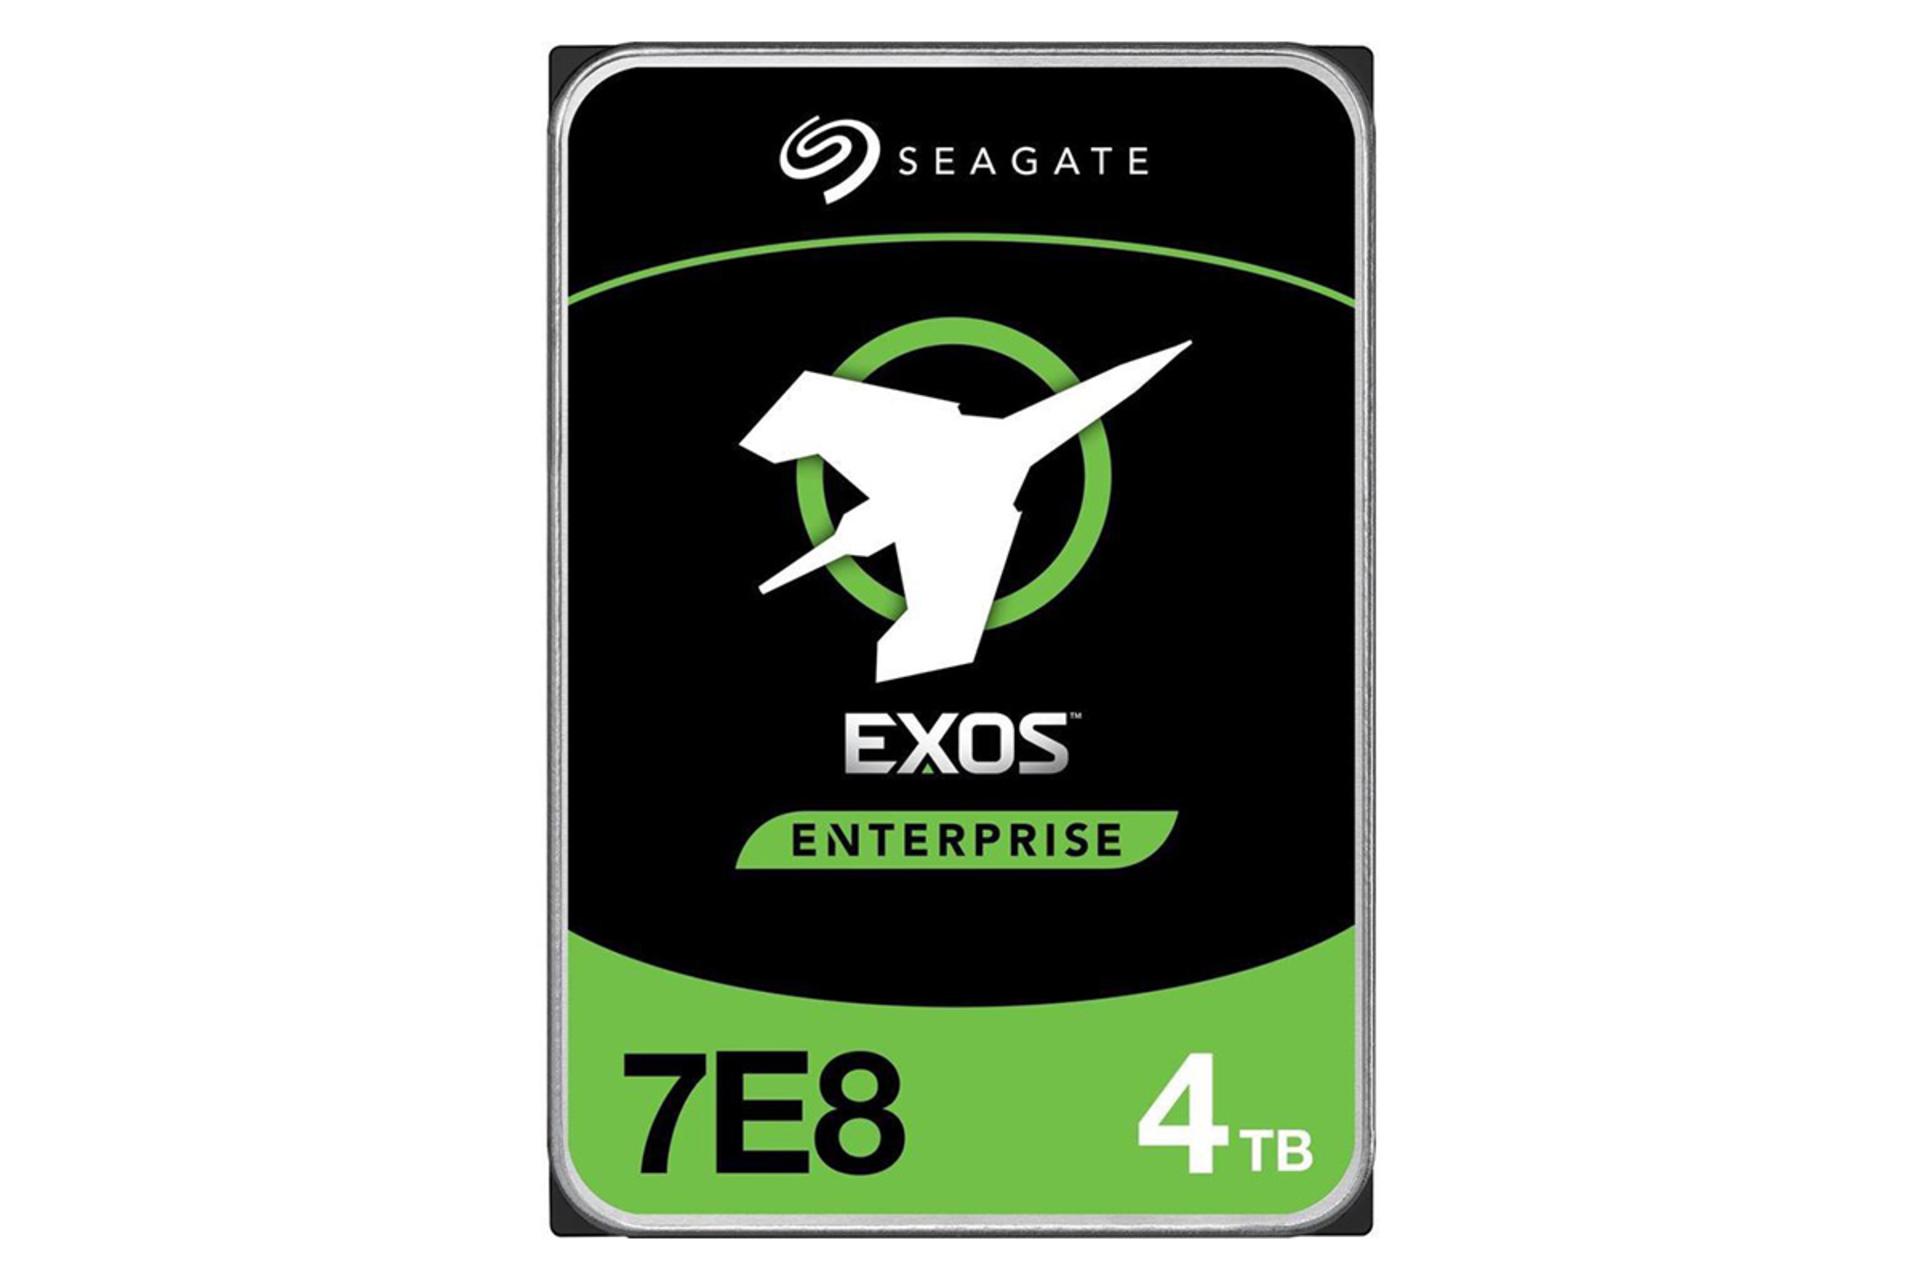 سیگیت Exos ST4000NM010A 7E8 ظرفیت 4 ترابایت / Seagate Exos ST4000NM010A Exos 7E8 4TB